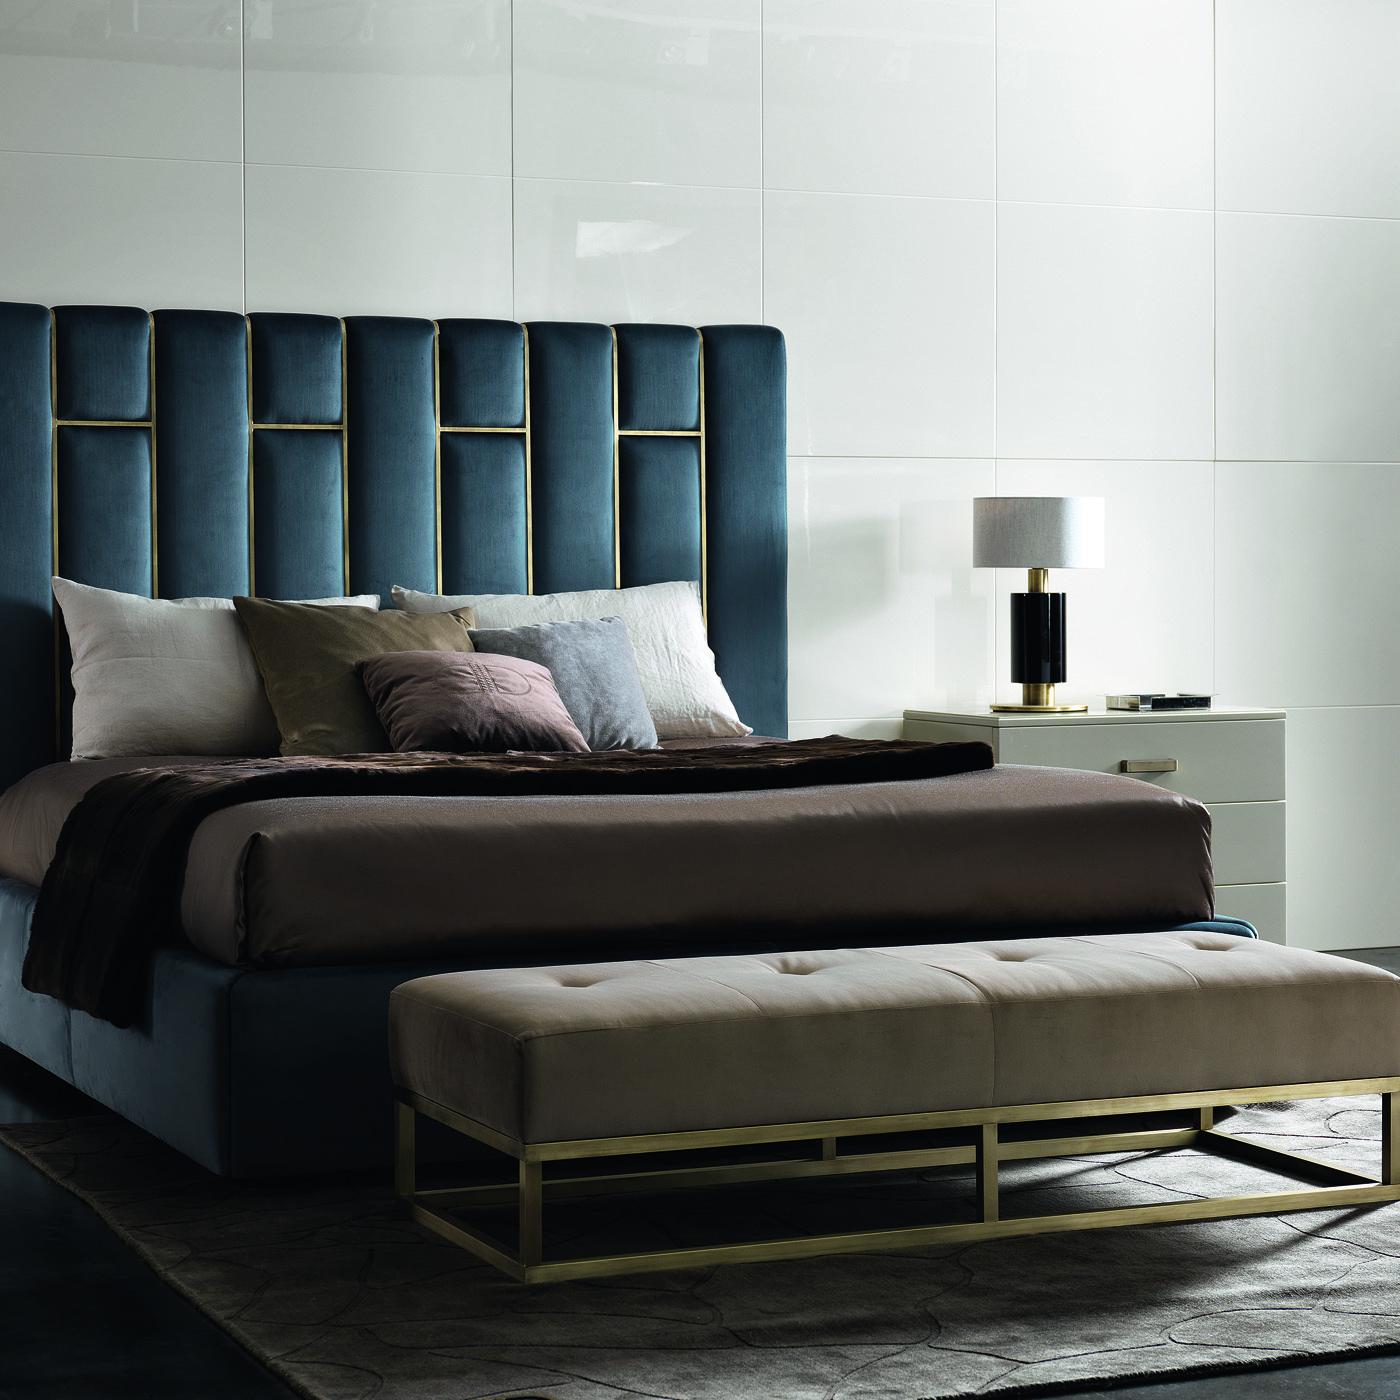 Die Milano dedroom bench ist ein stilvolles und funktionelles Accessoire für Ihr Schlafzimmer im modernen Stil. Die aus Sperrholz gefertigte und mit Gummi, Air Soft und einer Schicht Gänsedaunen bezogene Bank bietet optimalen Komfort. Das Gestell